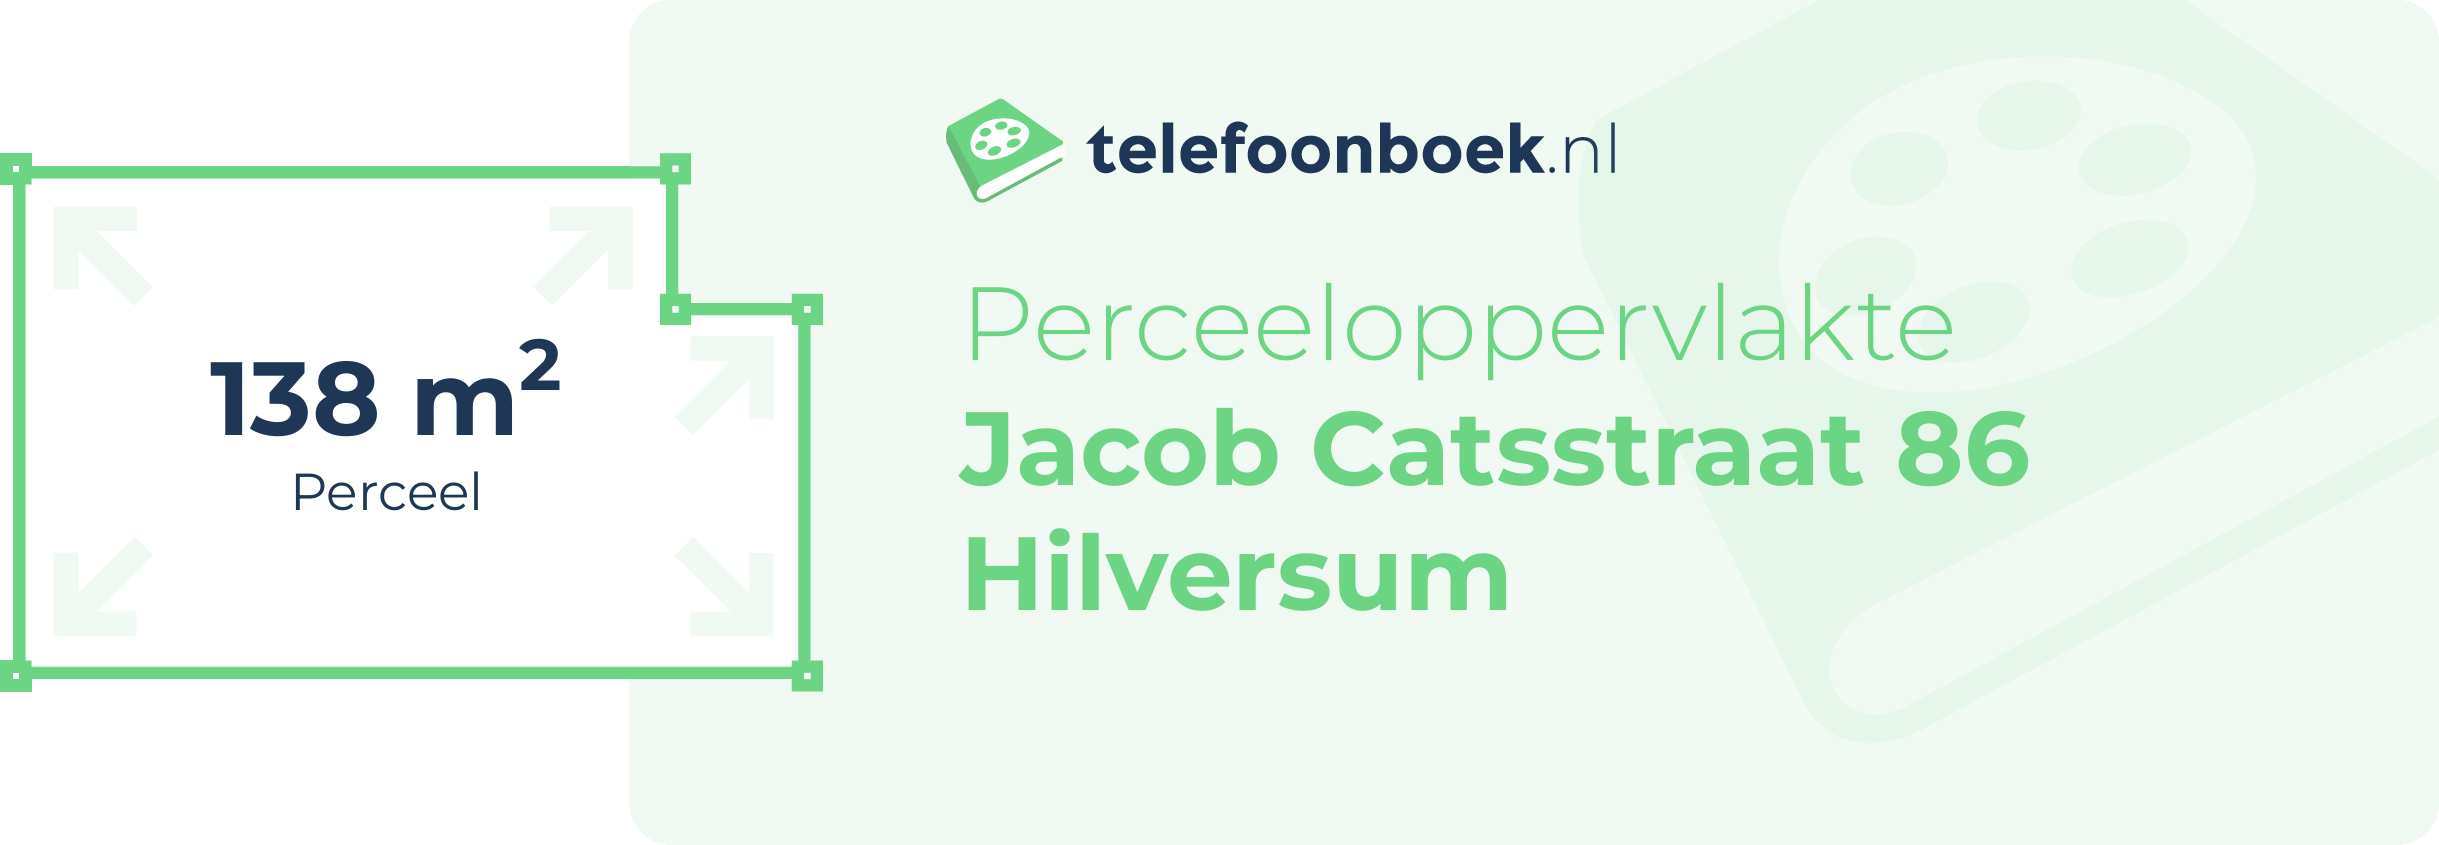 Perceeloppervlakte Jacob Catsstraat 86 Hilversum